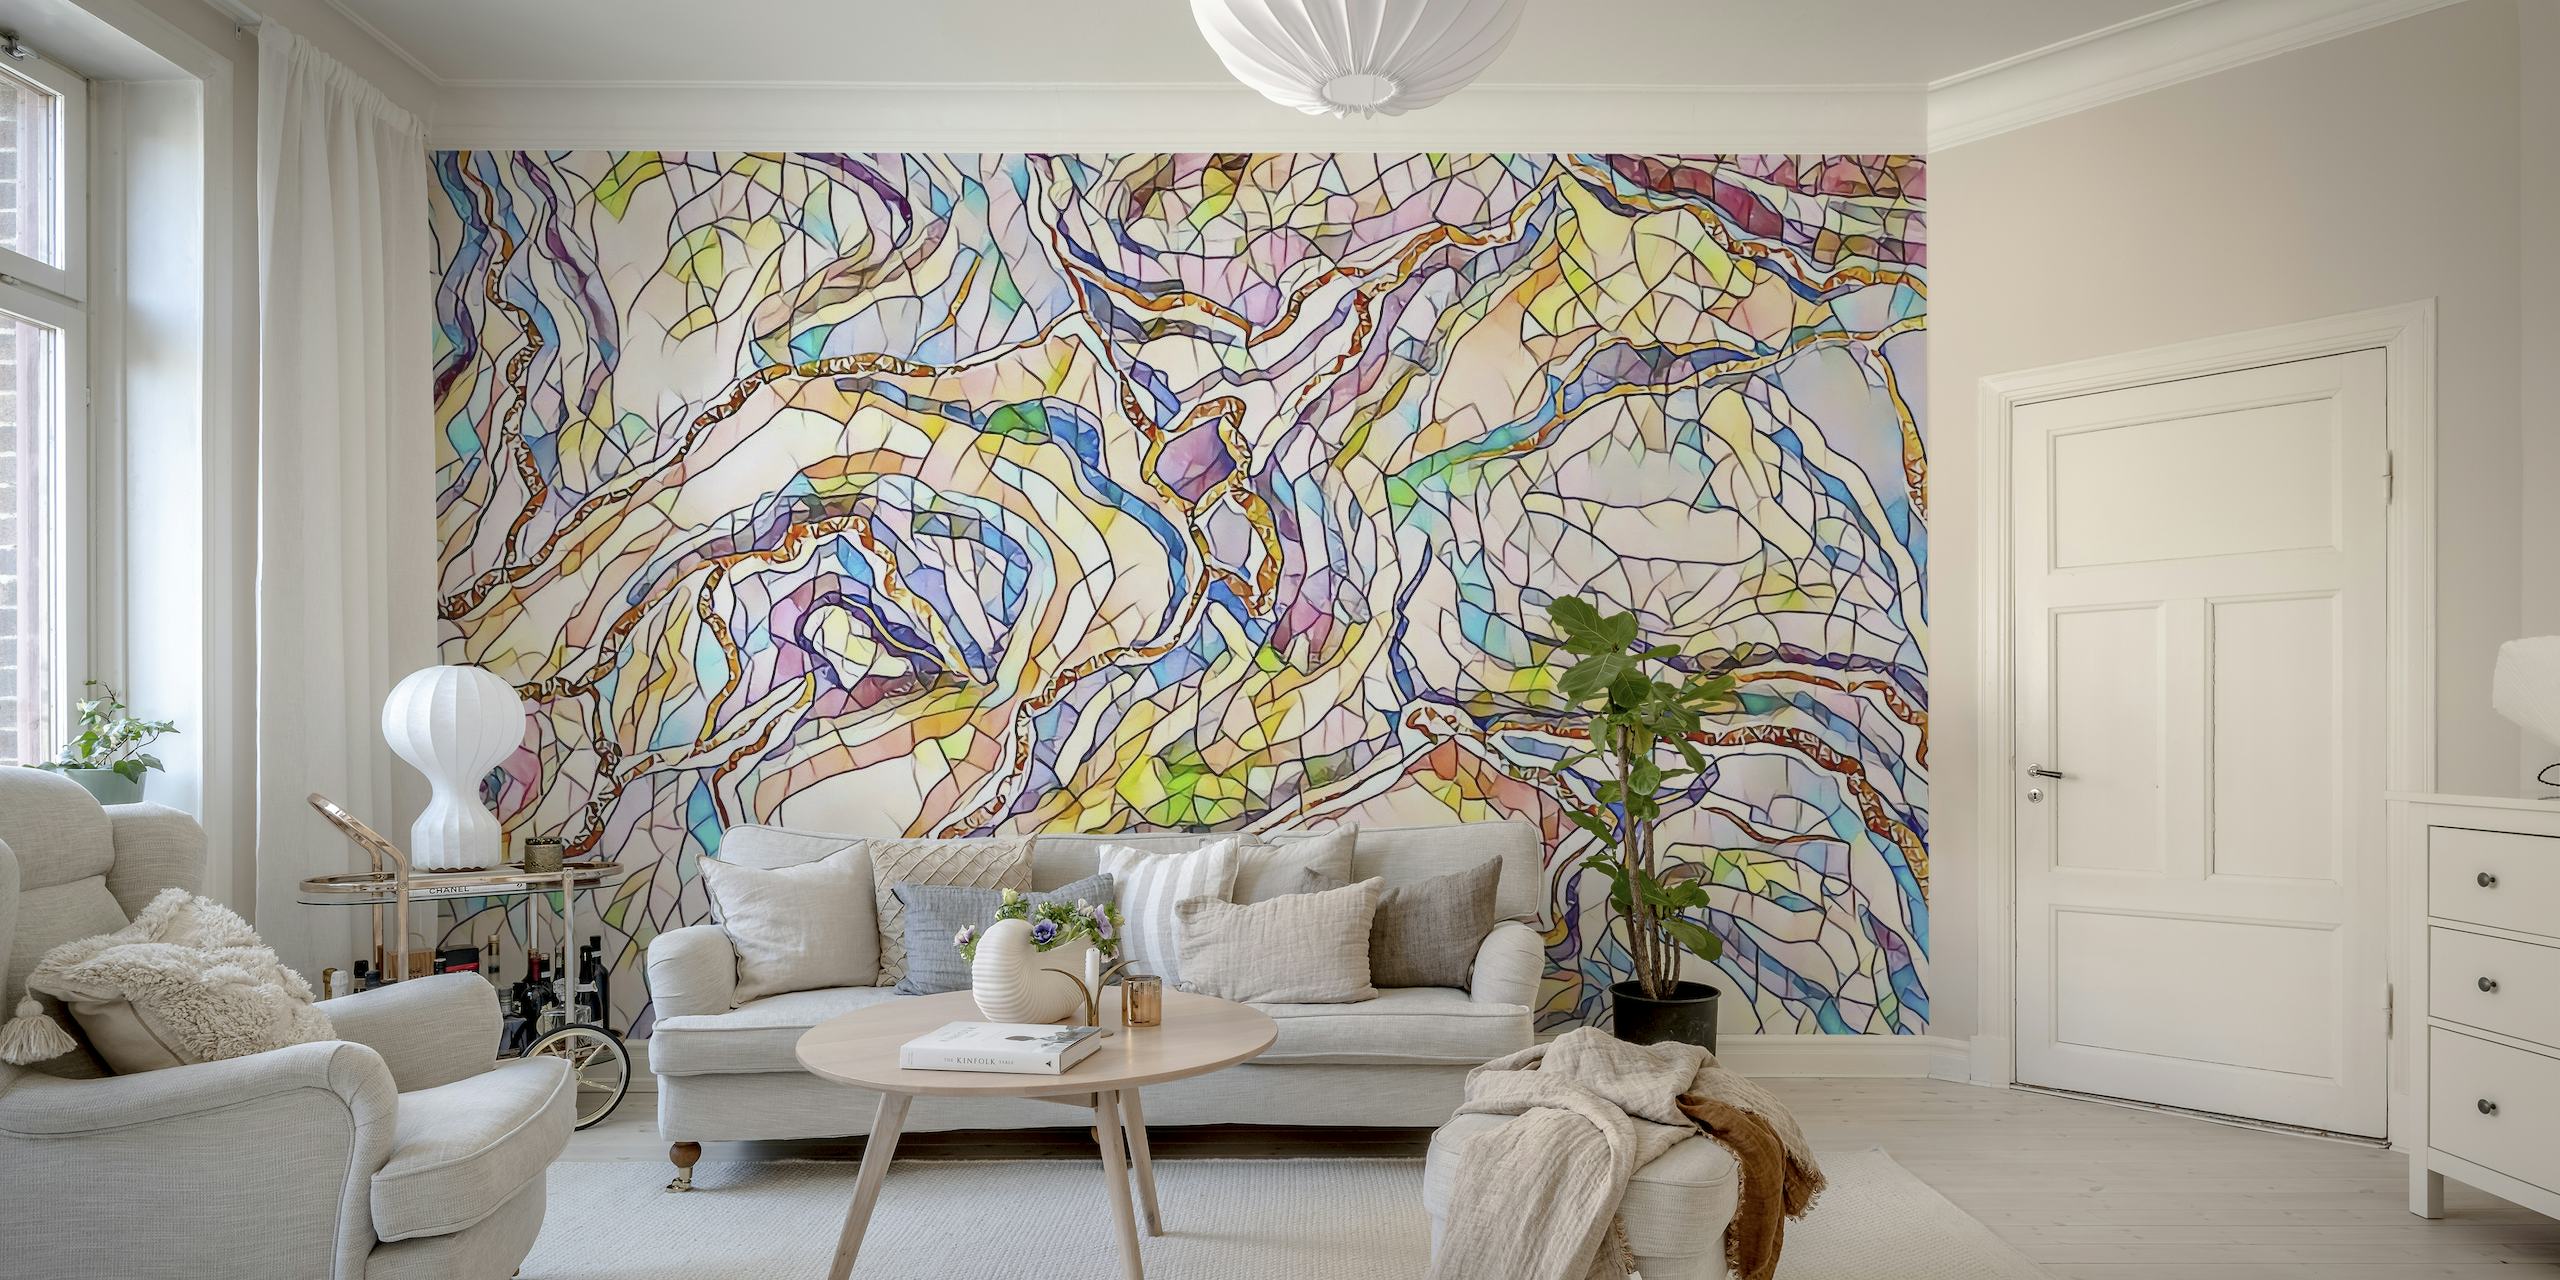 Fotomural vinílico de parede abstrato em mosaico pastel com uma mistura de cores suaves criando um design sereno.